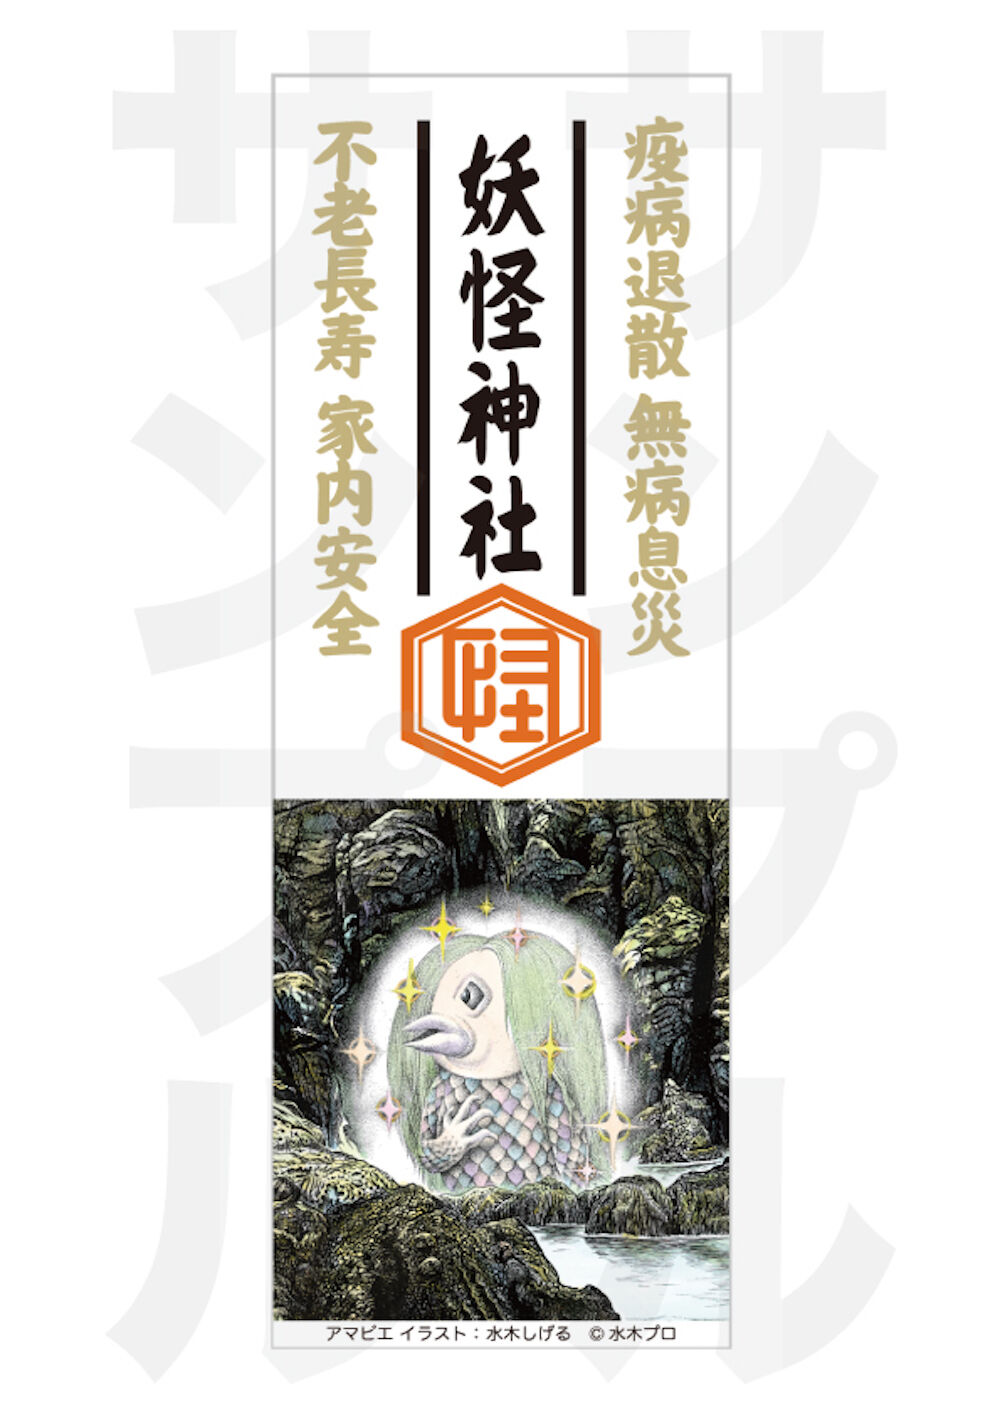 妖怪神社 アマビエのお札 ふだ が完成しました 7 日より配布開始 水木しげるロード 妖怪神社スタッフのブログ